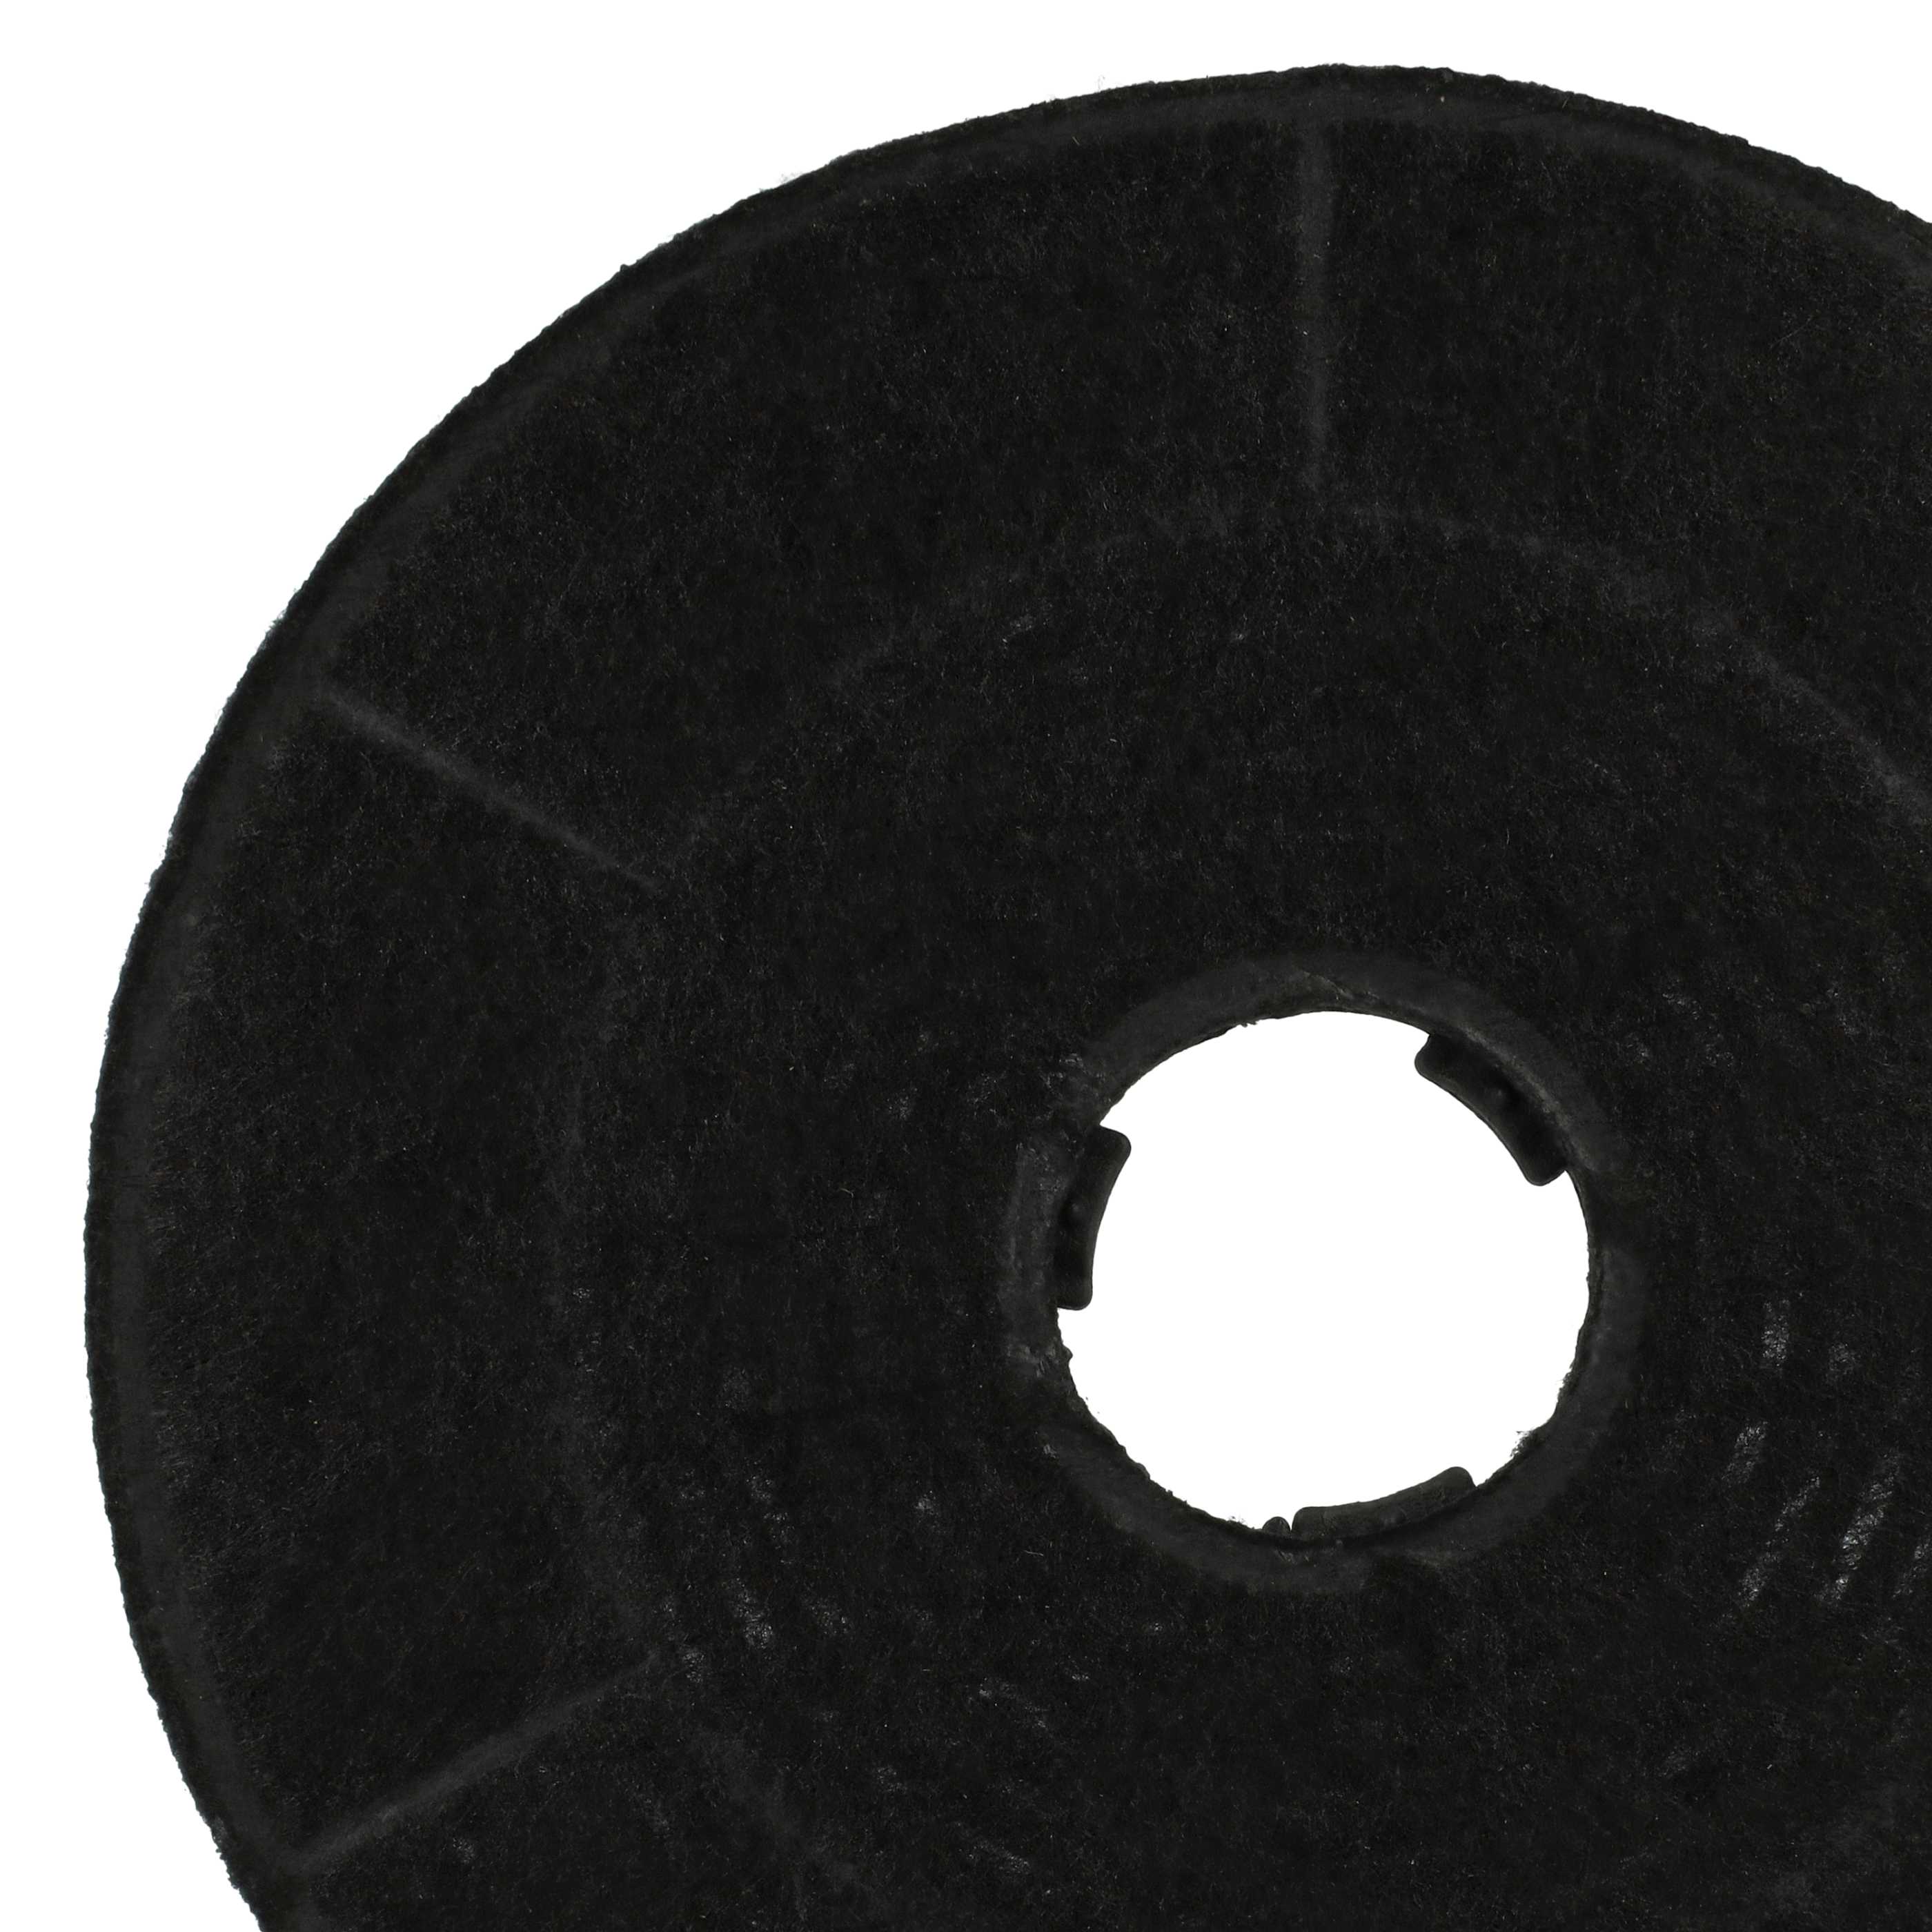 Filtro carboni attivi sostituisce Amica KF 17146 per cappe Bosch - 16 cm